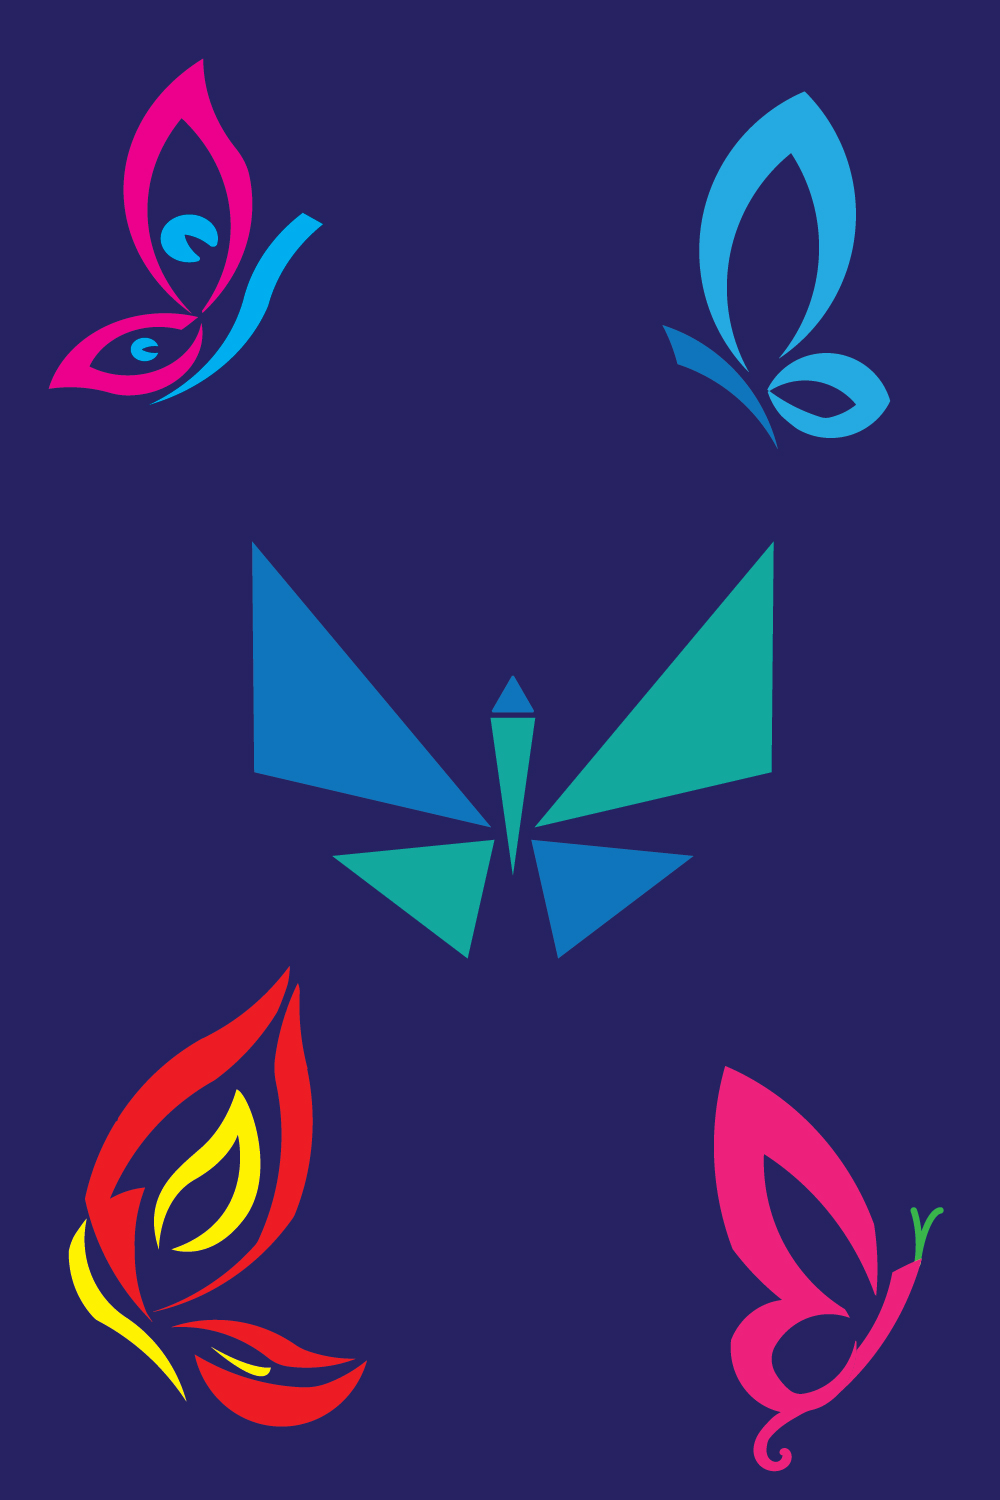 butterfly logo, bird logo, 5 butterfly logo, beautiful logo Caterpillar logo, pinterest preview image.